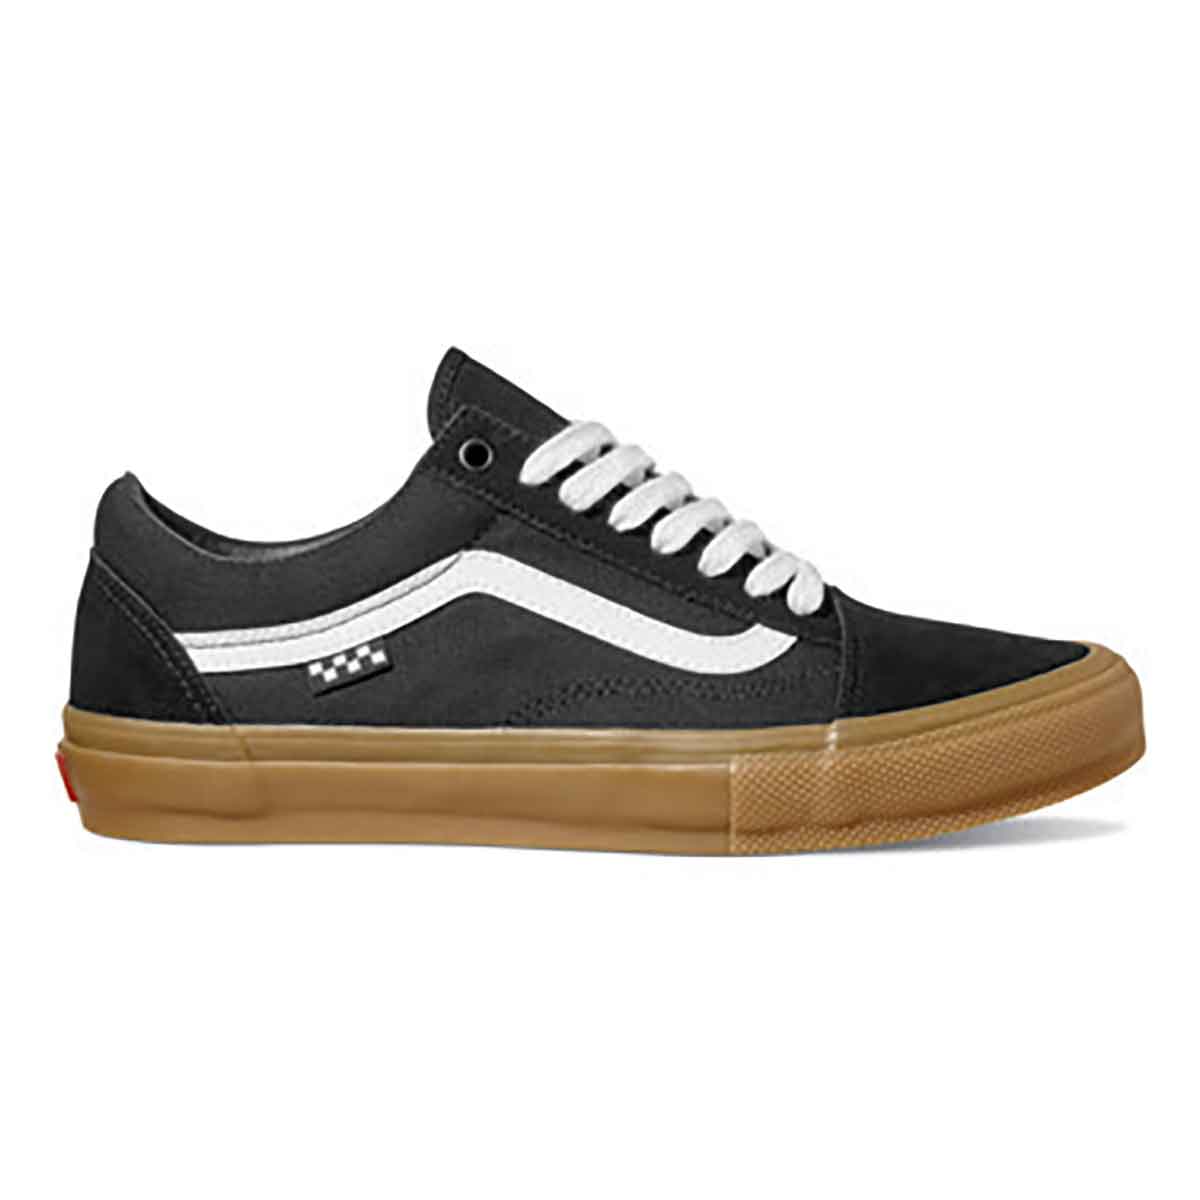 Vans Skate Old Skool Pro Shoes - Black/Gum SoCal Skateshop